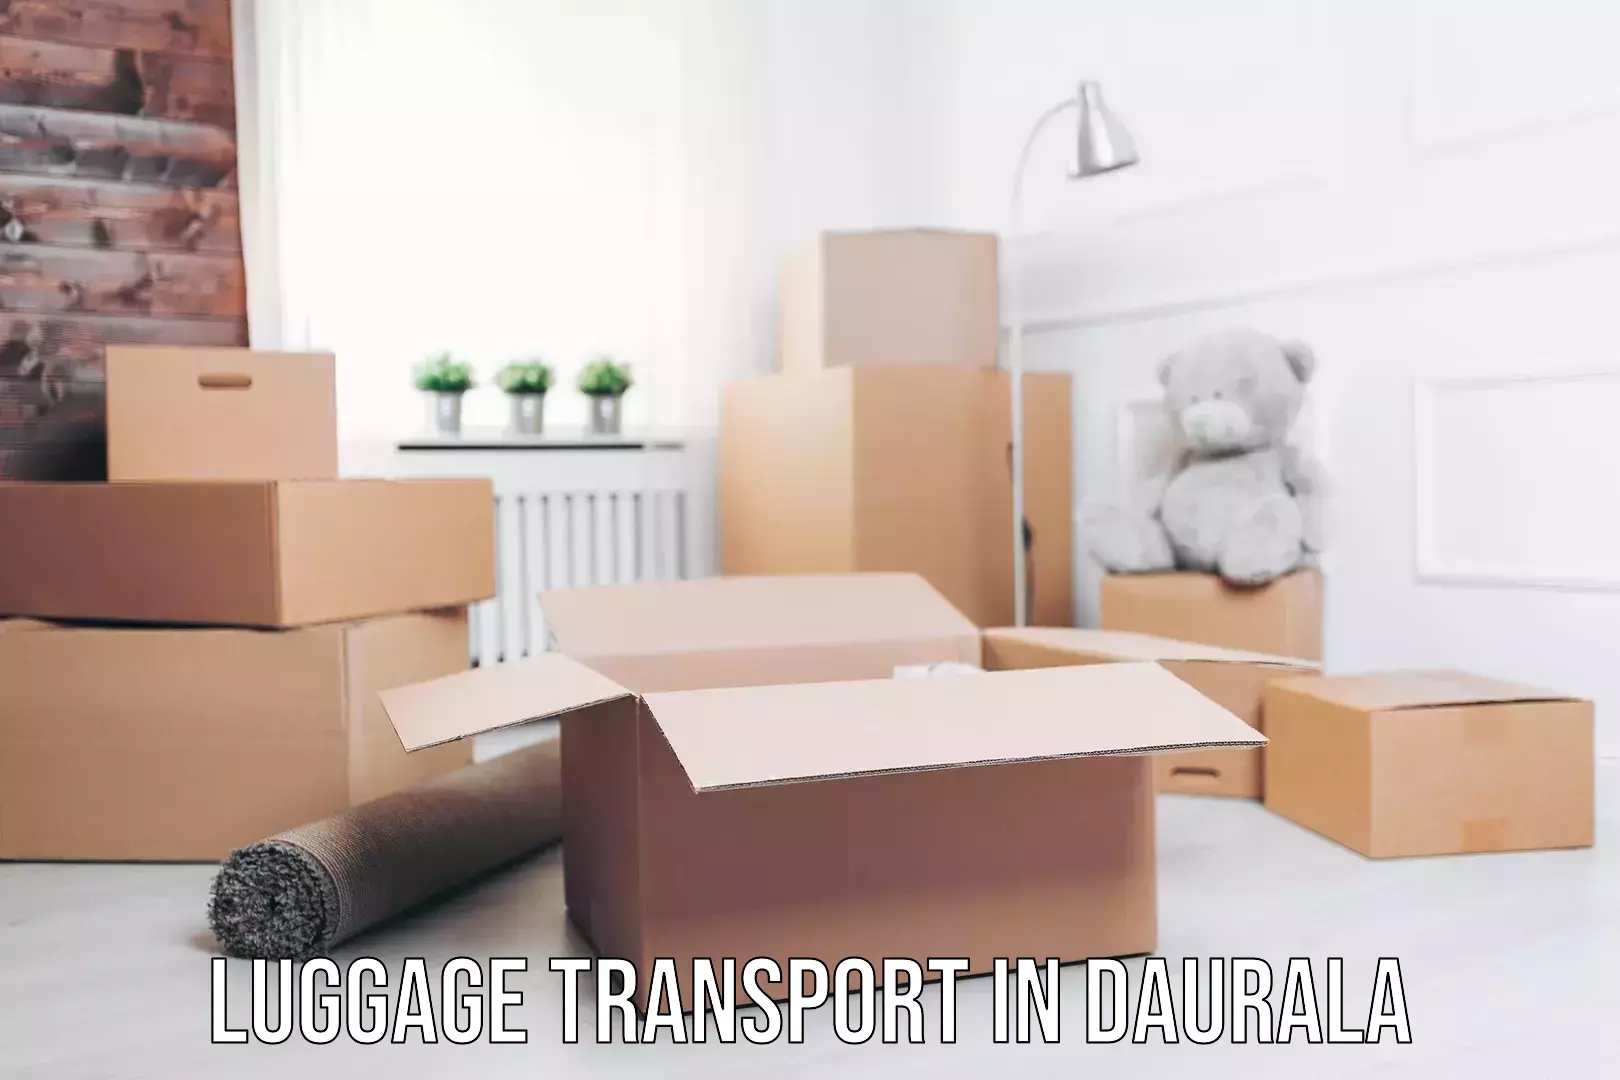 Luggage transit service in Daurala